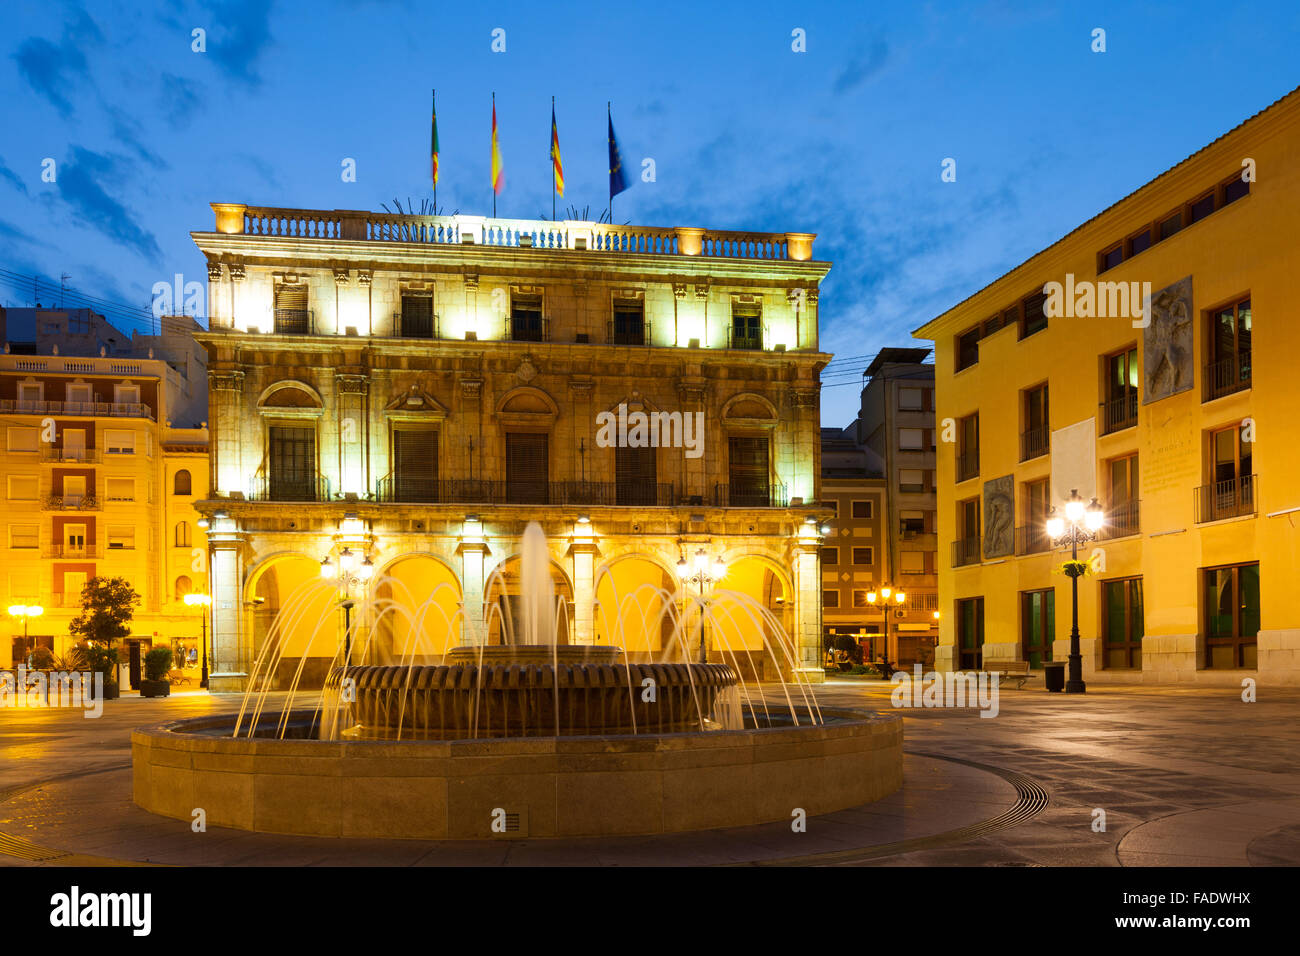 Ayuntamiento in the town square. Castellon de la Plana, Spain Stock Photo